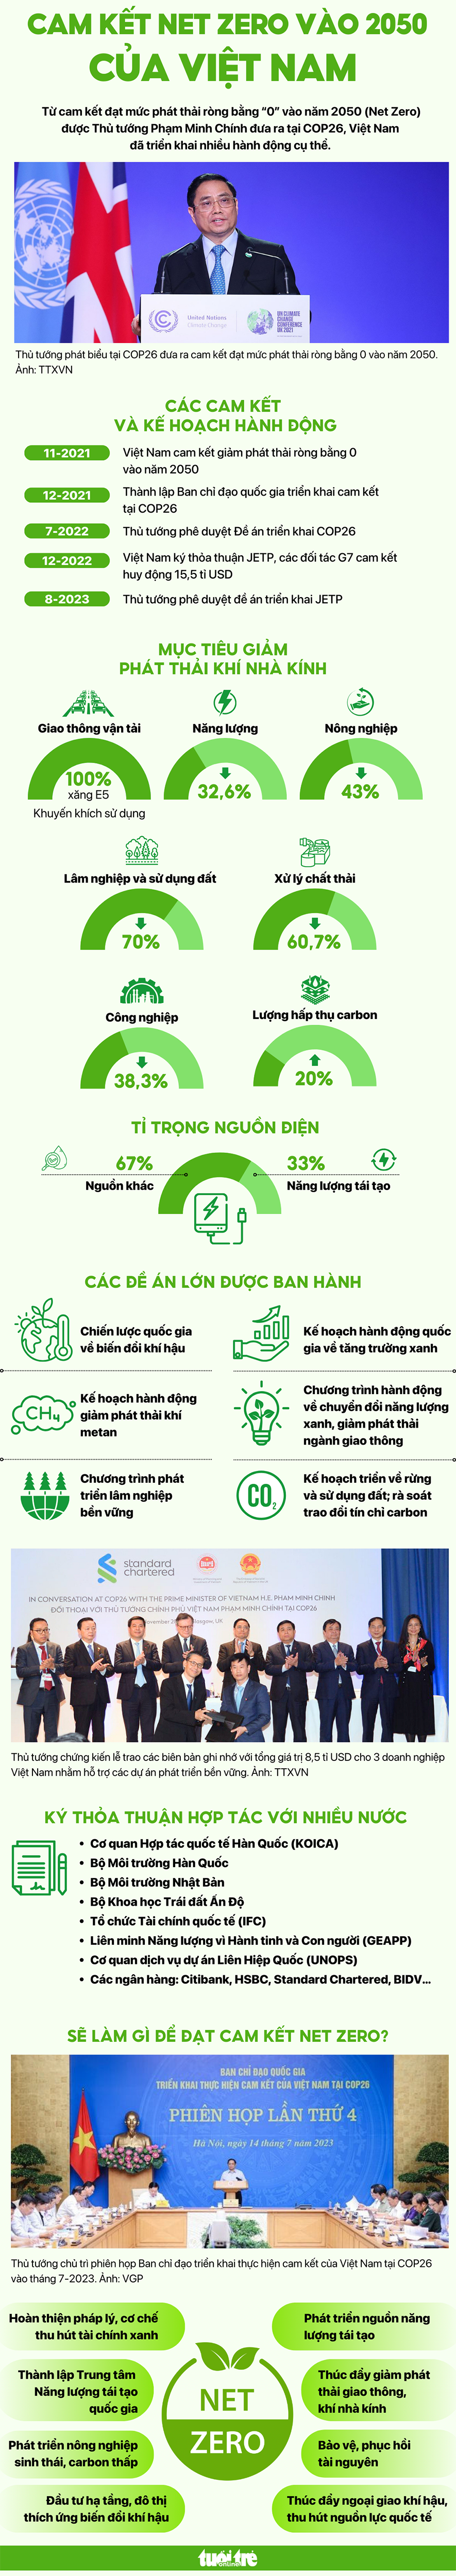 Cam kết Net Zero vào năm 2050 của Việt Nam - Nguồn: Bộ Tài nguyên và Môi trường, Dữ liệu: NGỌC AN, Đồ họa: NGỌC THÀNH